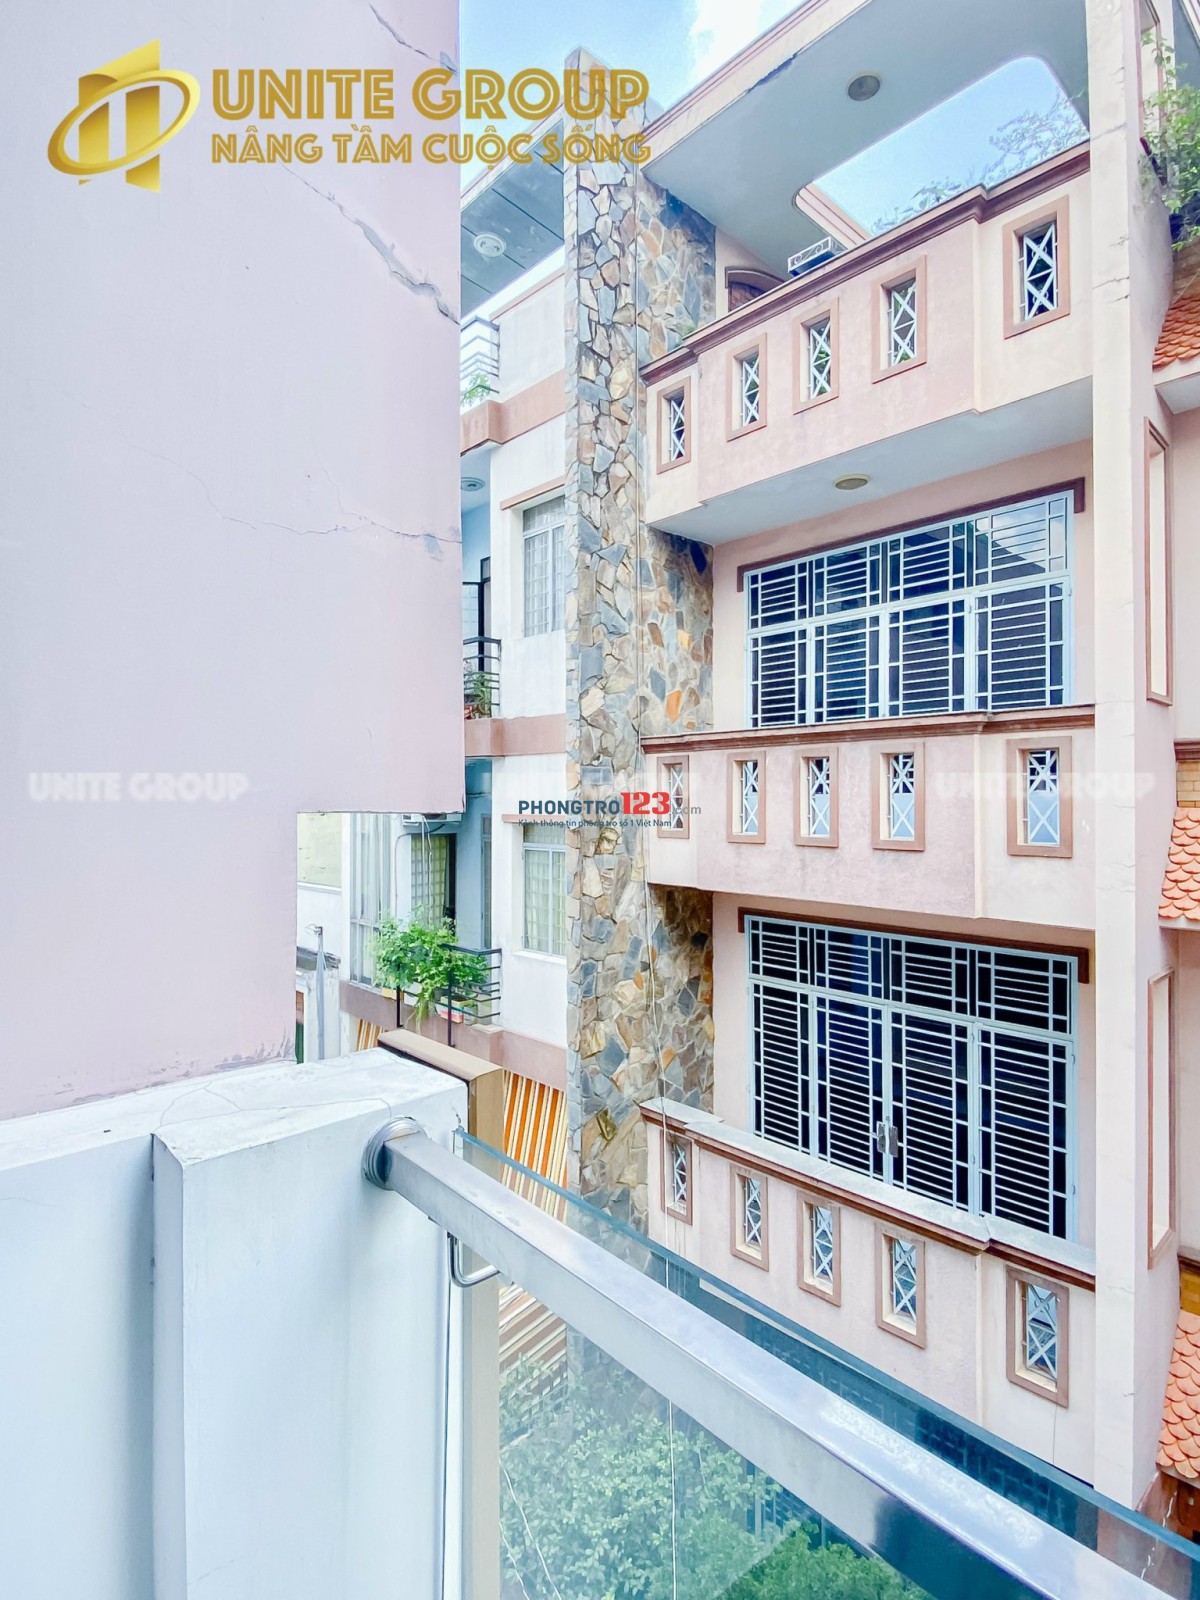 Cho Thuê căn hộ mini 1PN, bancong, cửa sổ, máy giặt Phú Nhuận